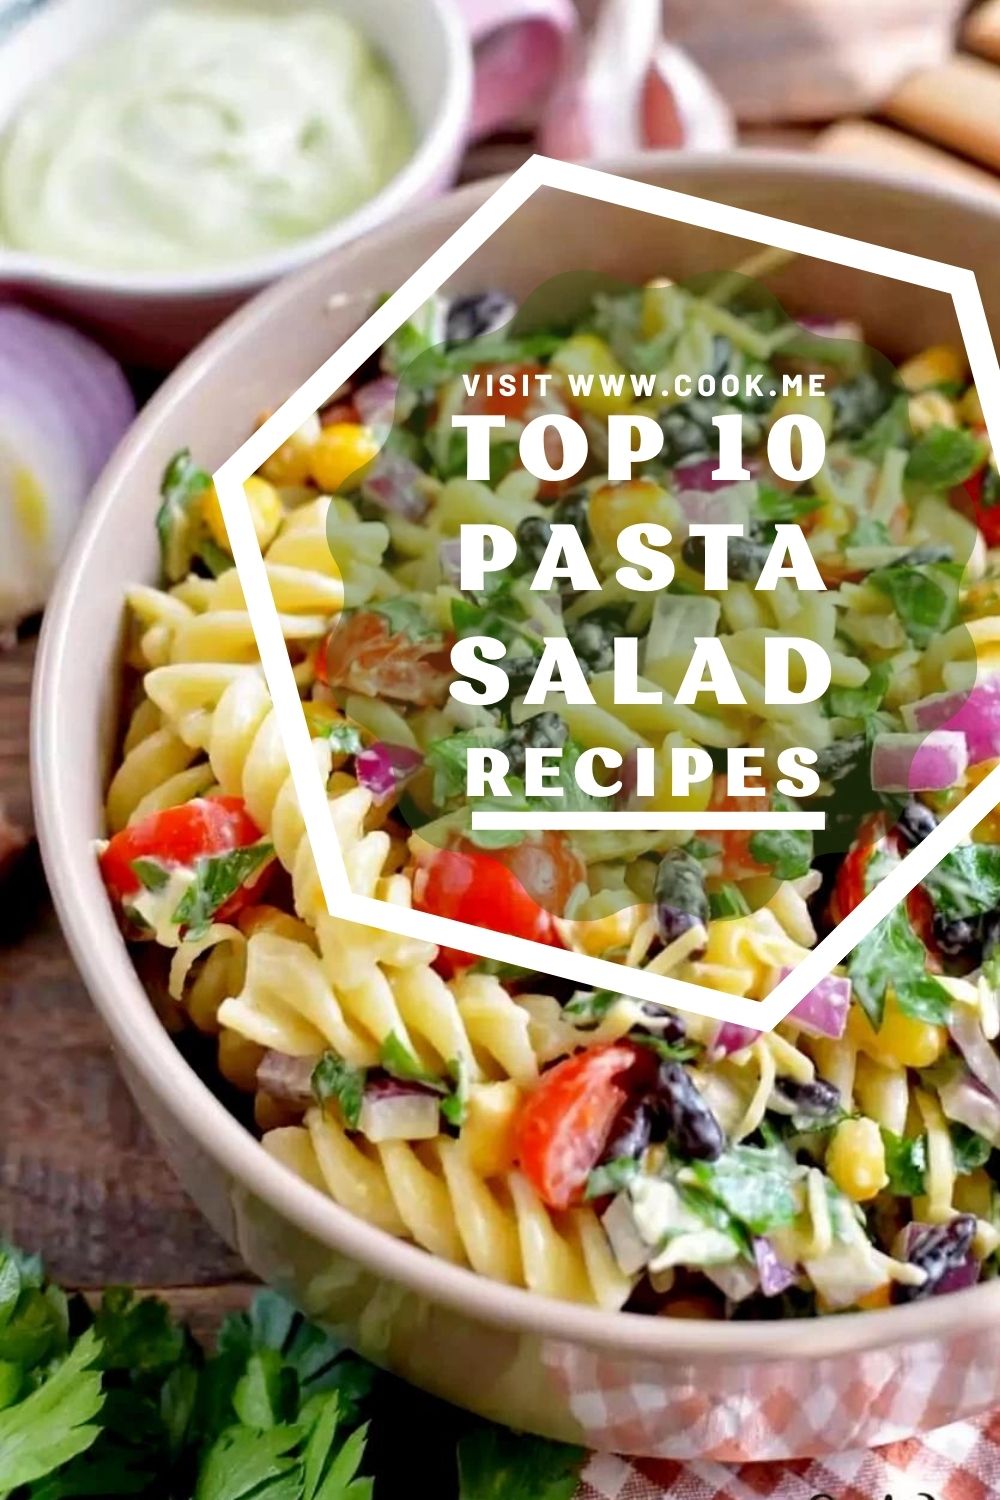 TOP 10 Pasta Salad Recipes - Cook.me Recipes